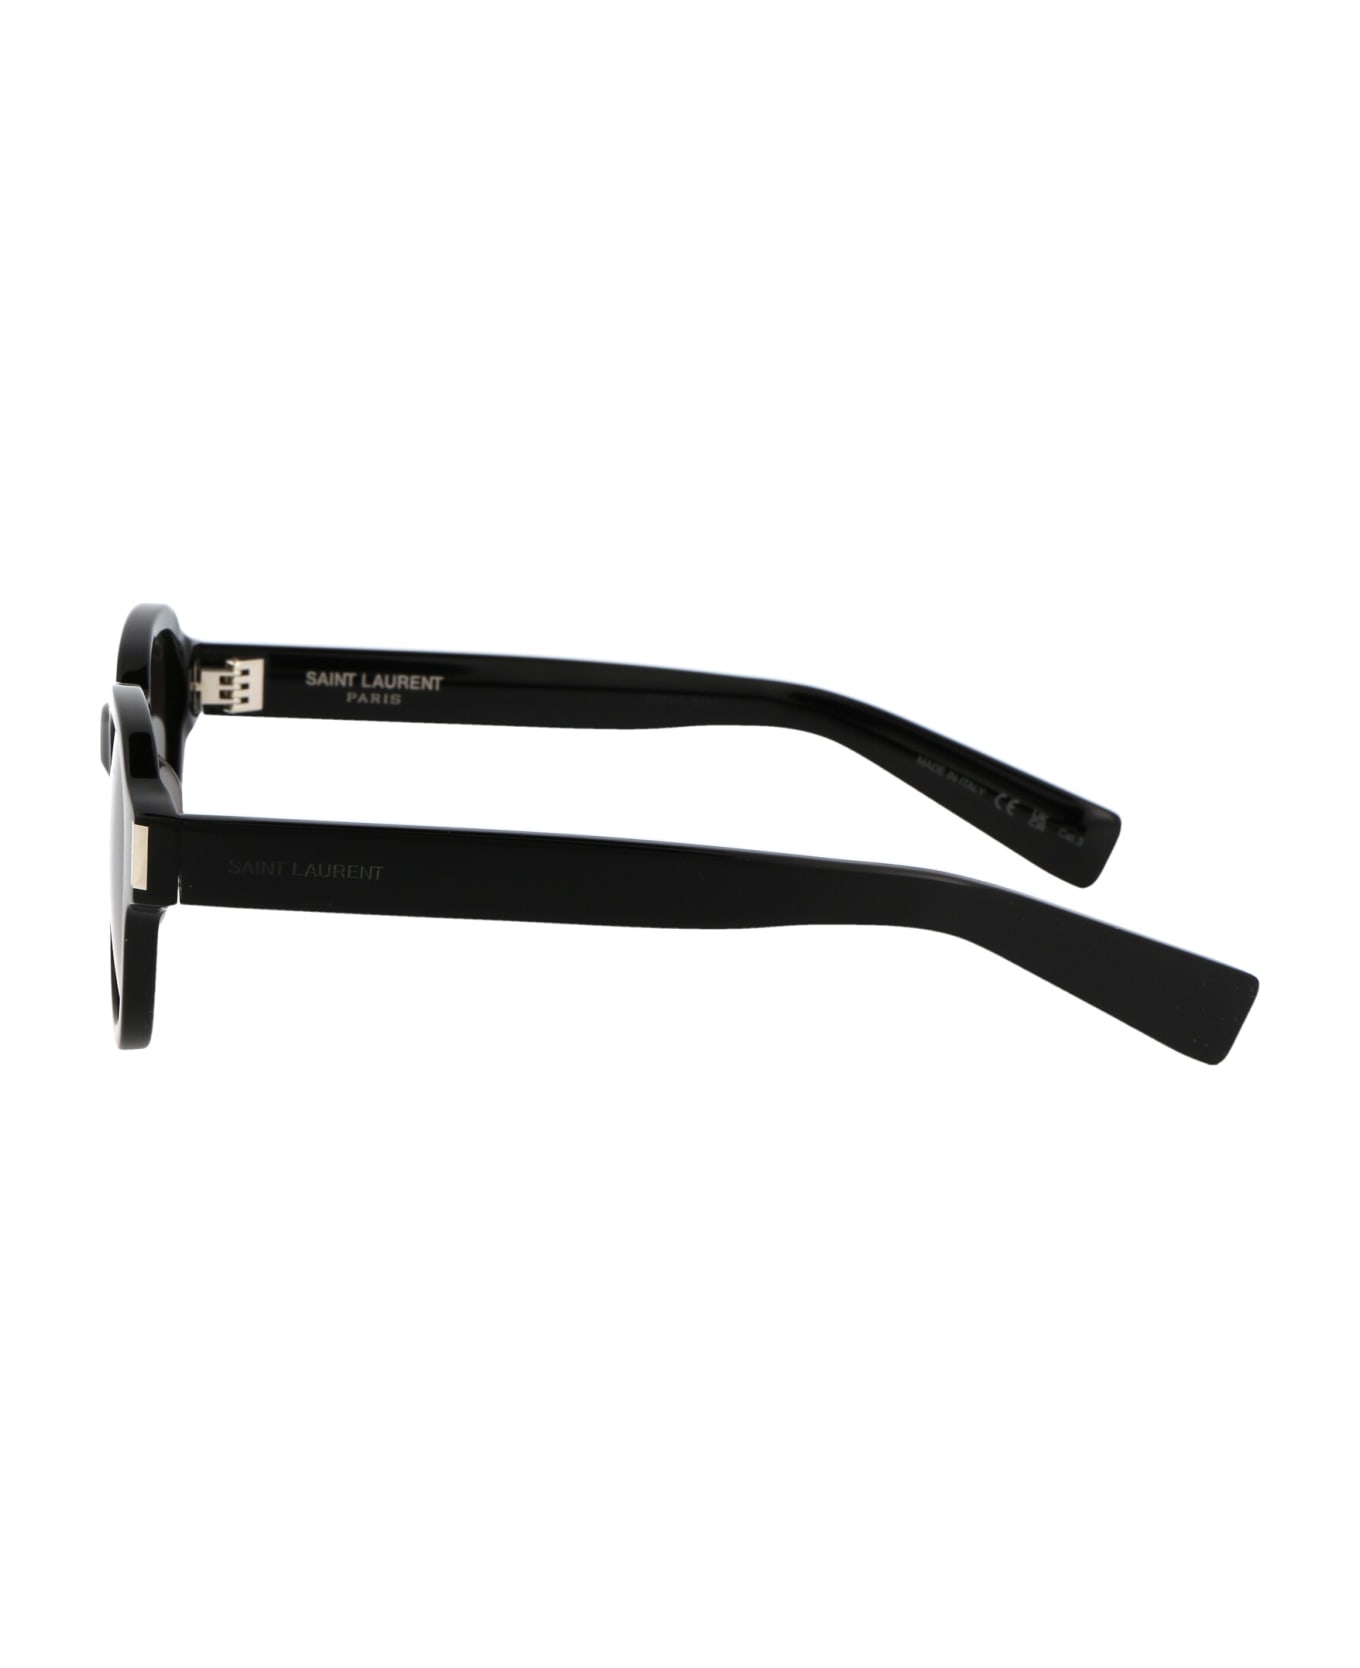 Saint Laurent Eyewear Sl 546 Sunglasses - 001 BLACK BLACK BLACK サングラス